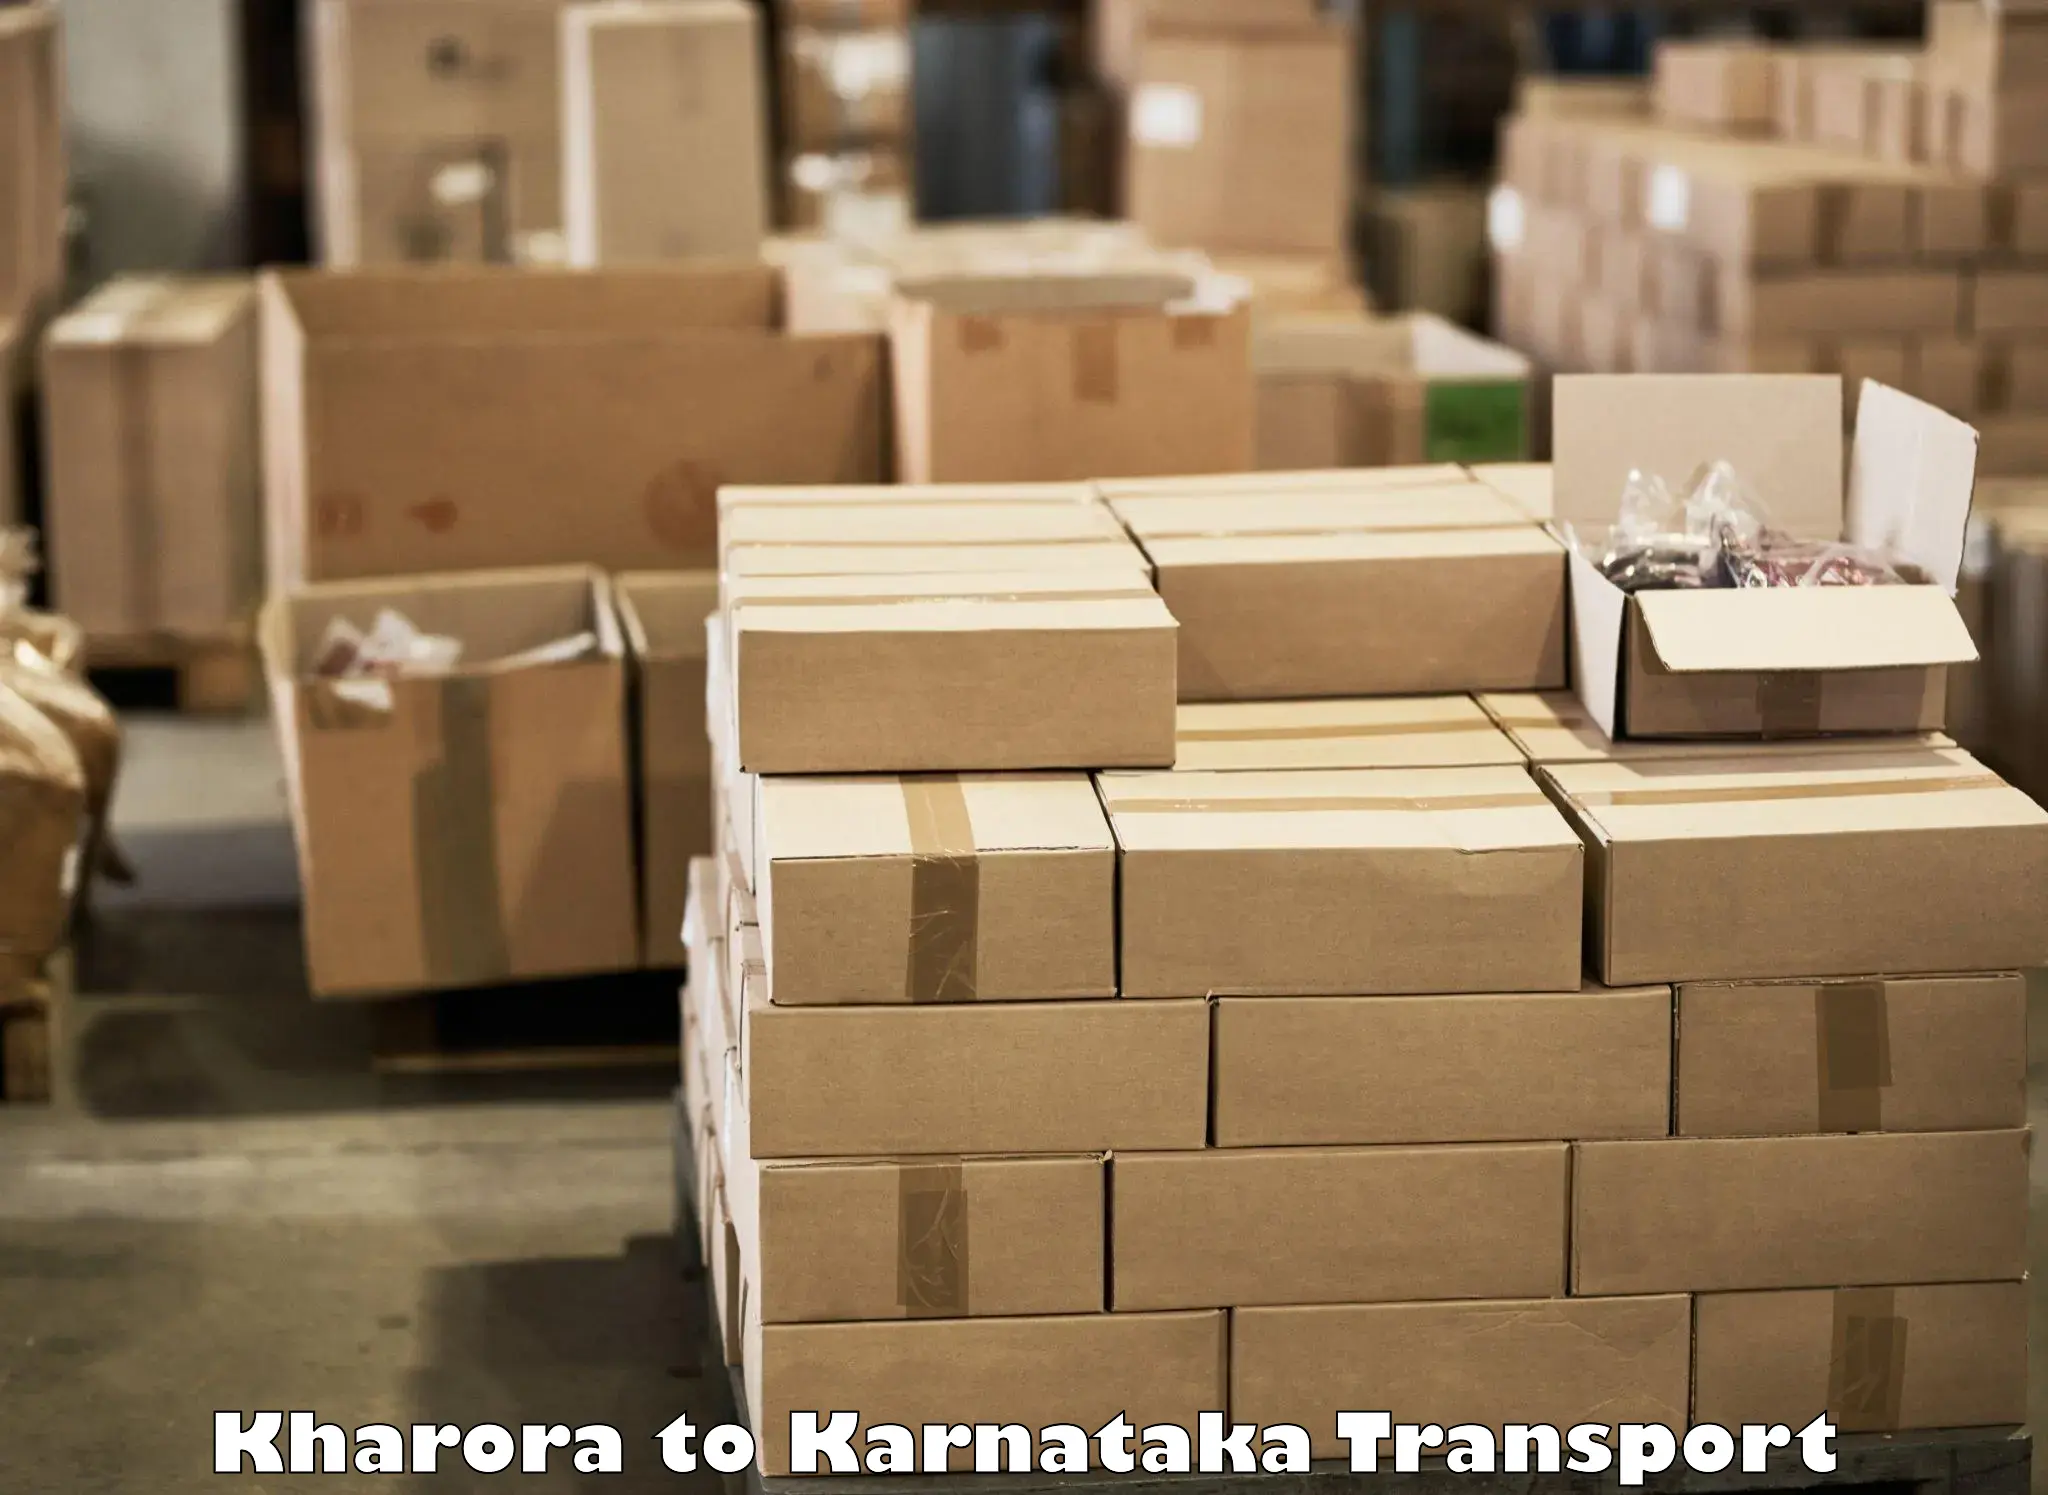 Container transport service Kharora to Toranagallu